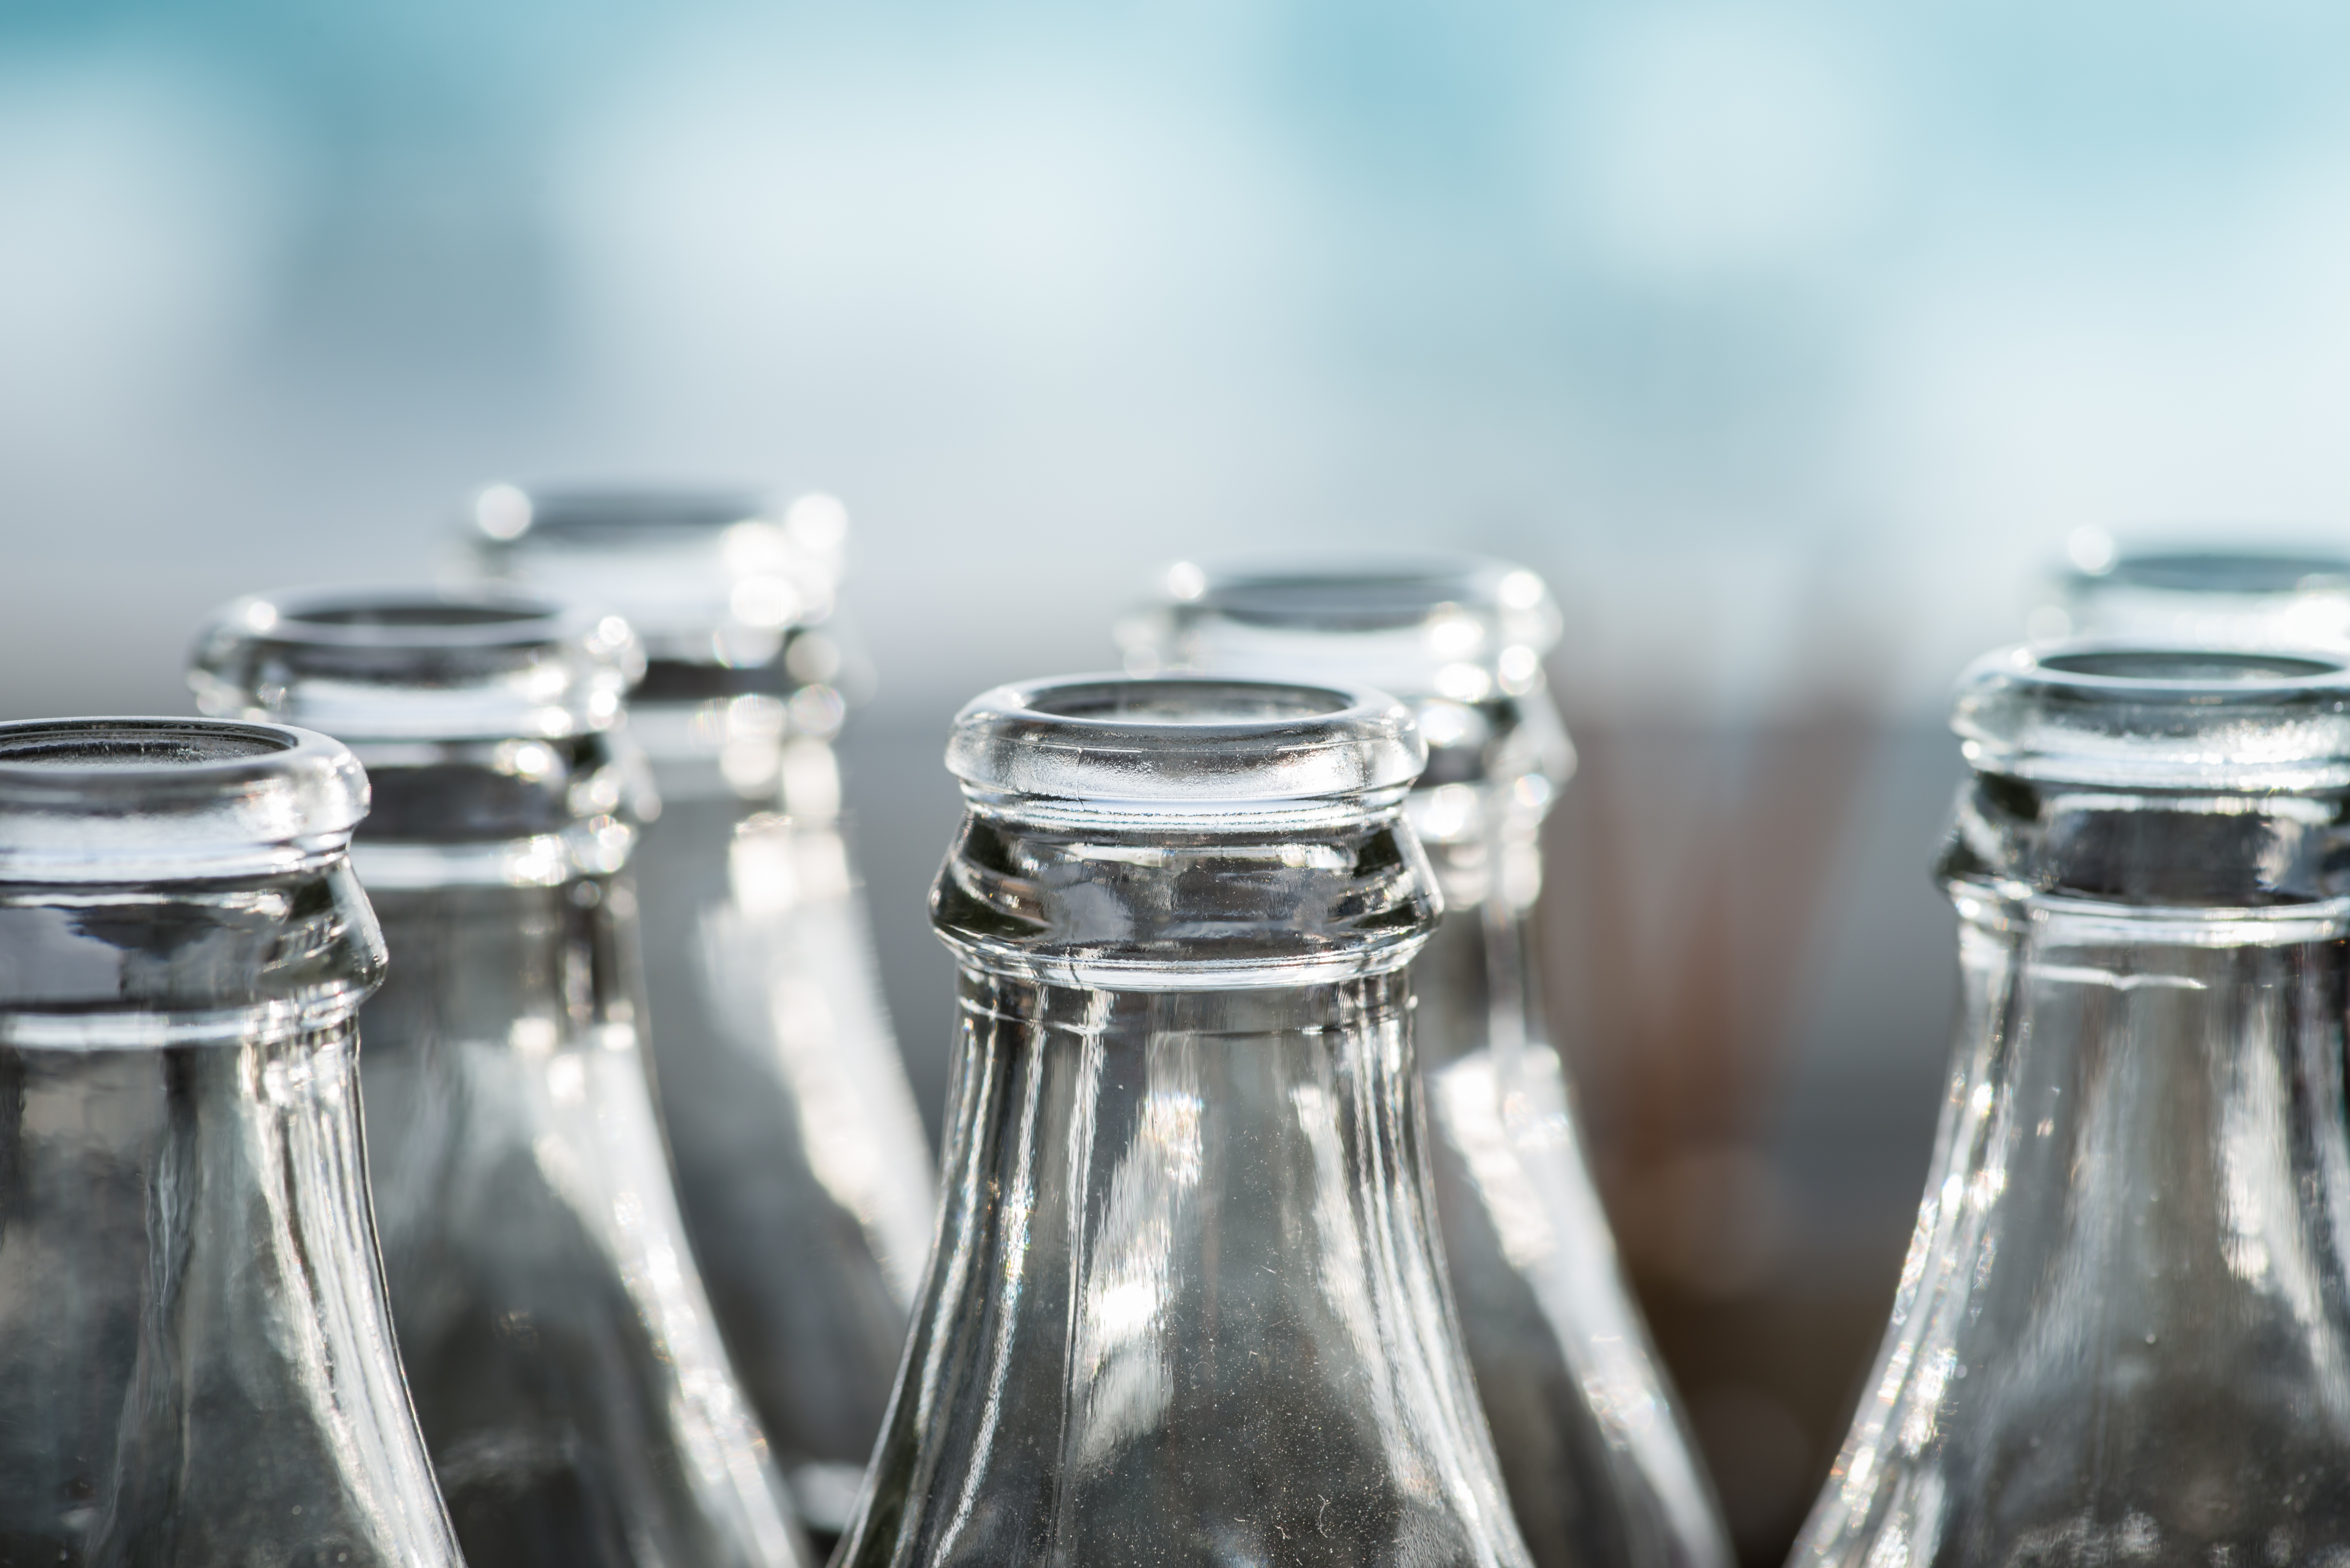 De ce este recomandat să depozităm alimentele și băuturile în recipiente de sticlă, și nu în plastic sau aluminiu